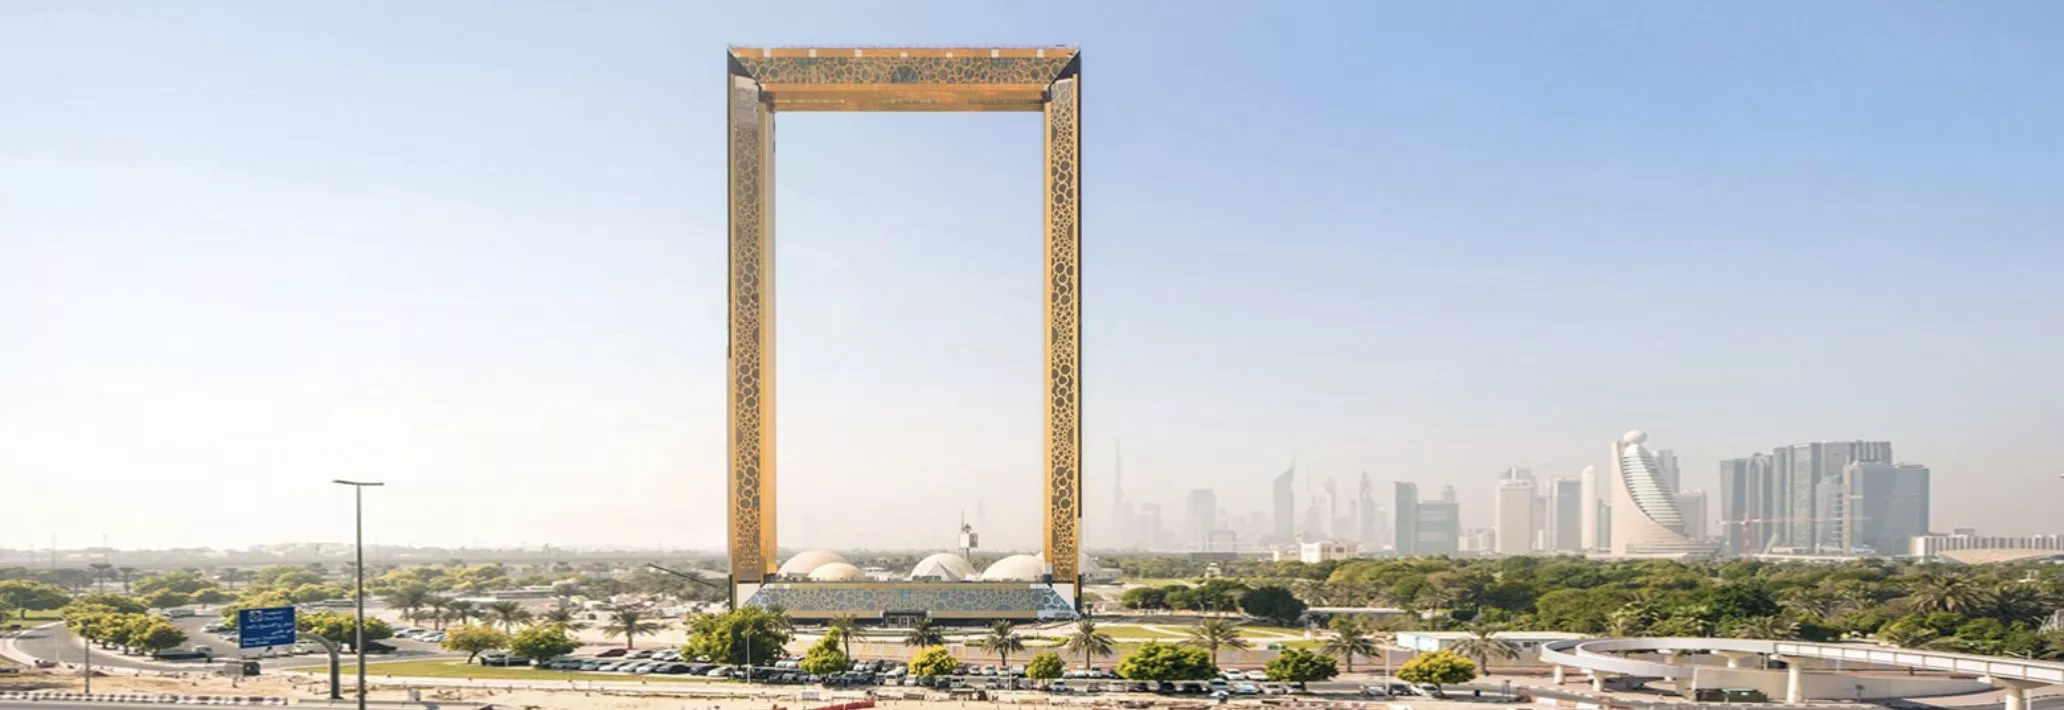 迪拜又来了!建了个世界最大画框,却像烂尾楼